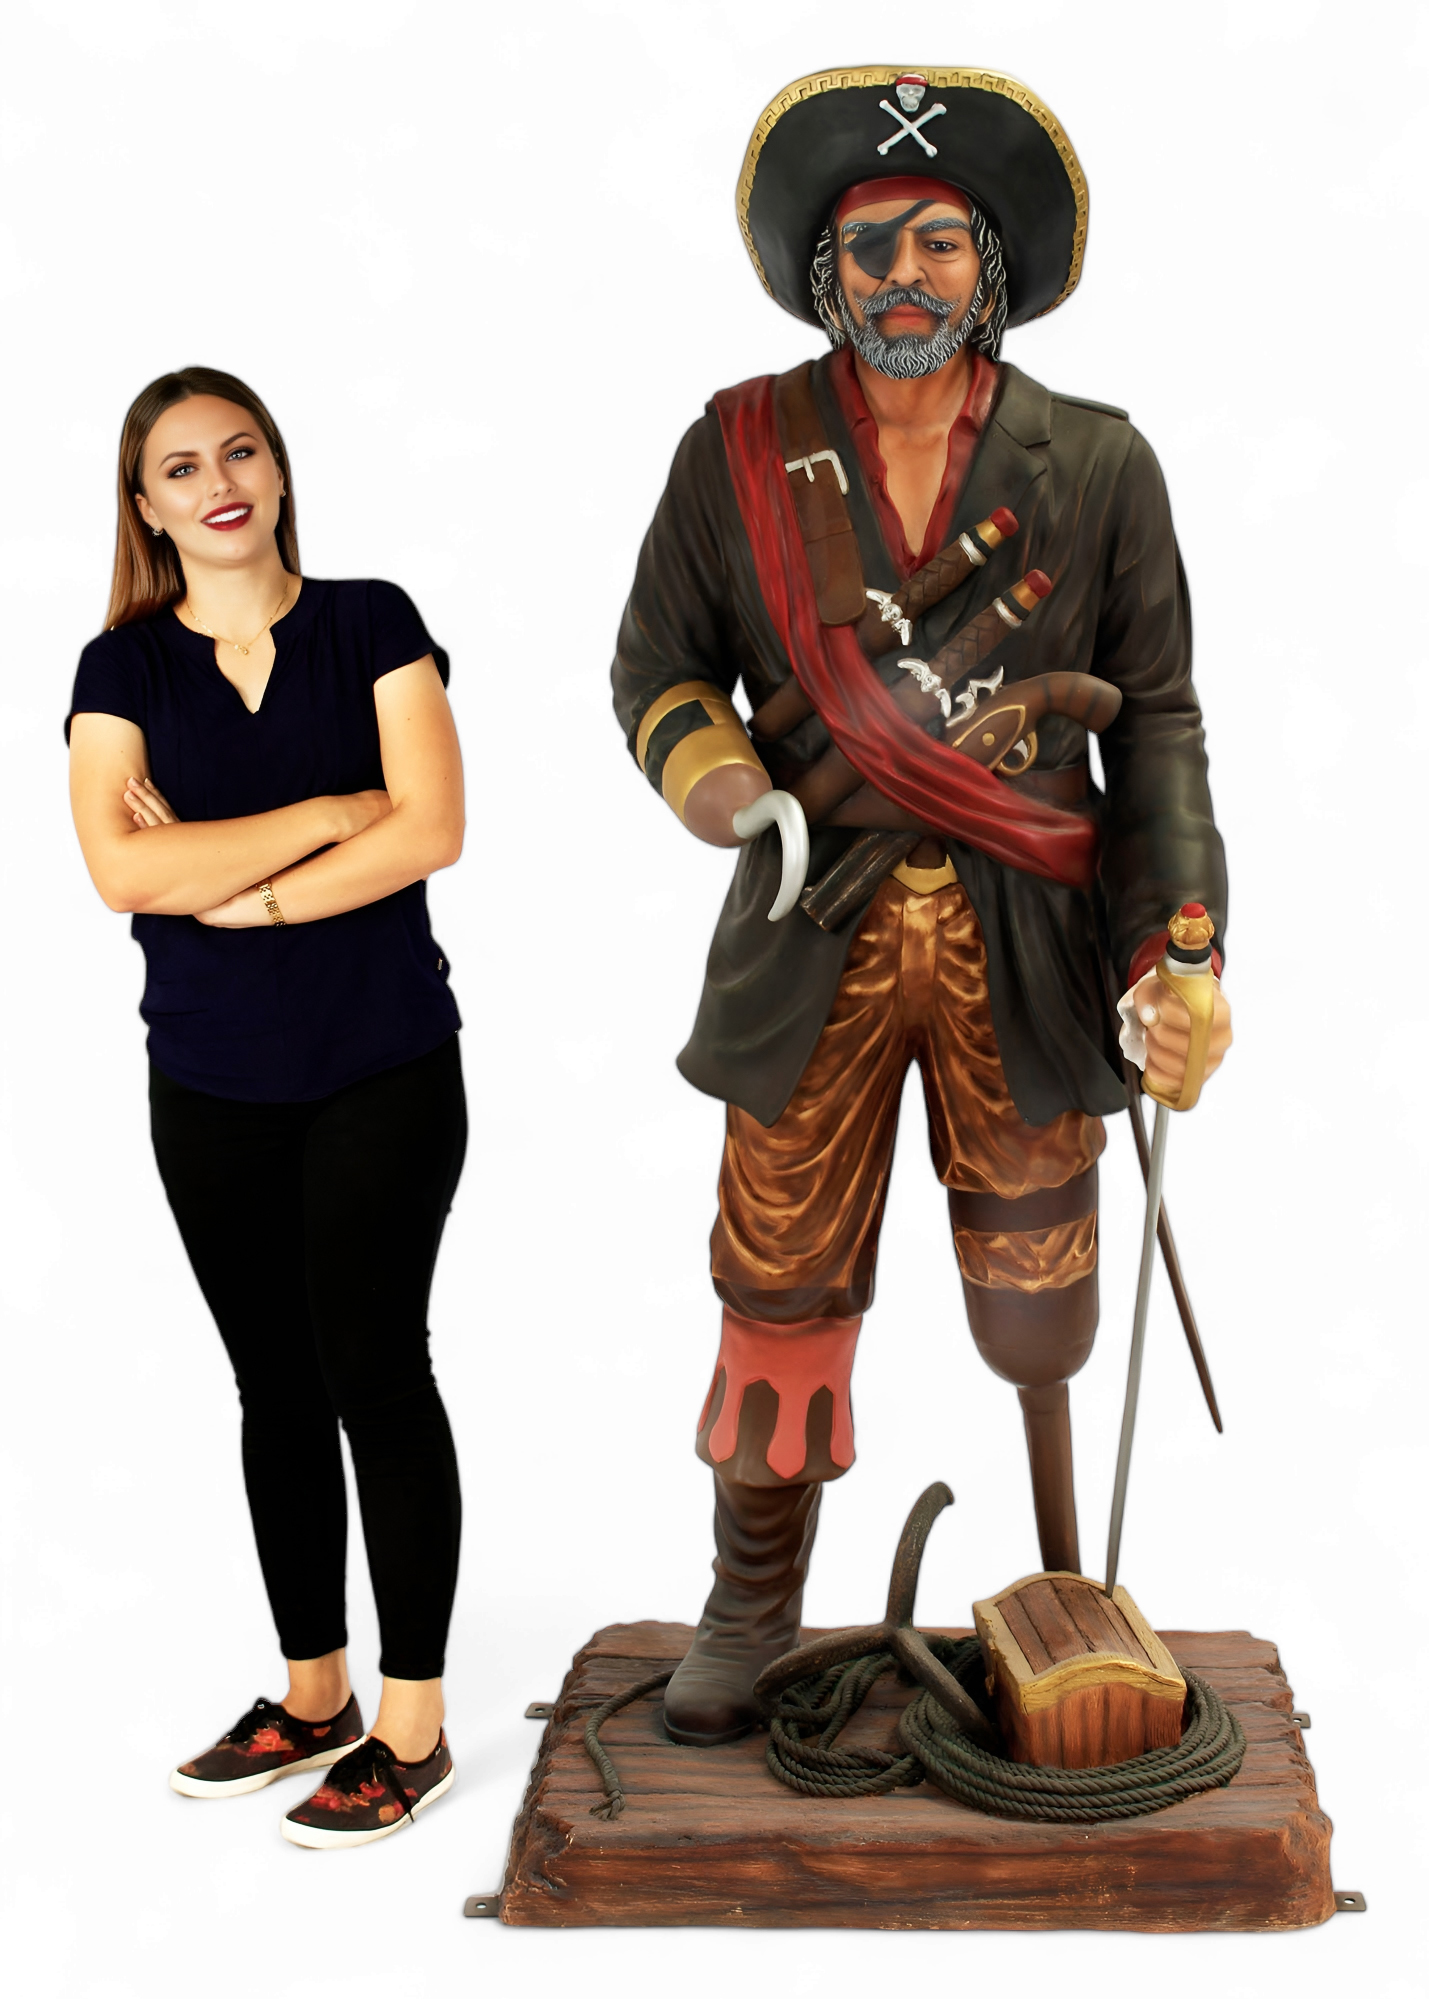 https://theinteriorgallery.com/prod_images_blowup/Peg-Leg-Pirate-Statue-Captain-Hook-1.jpg